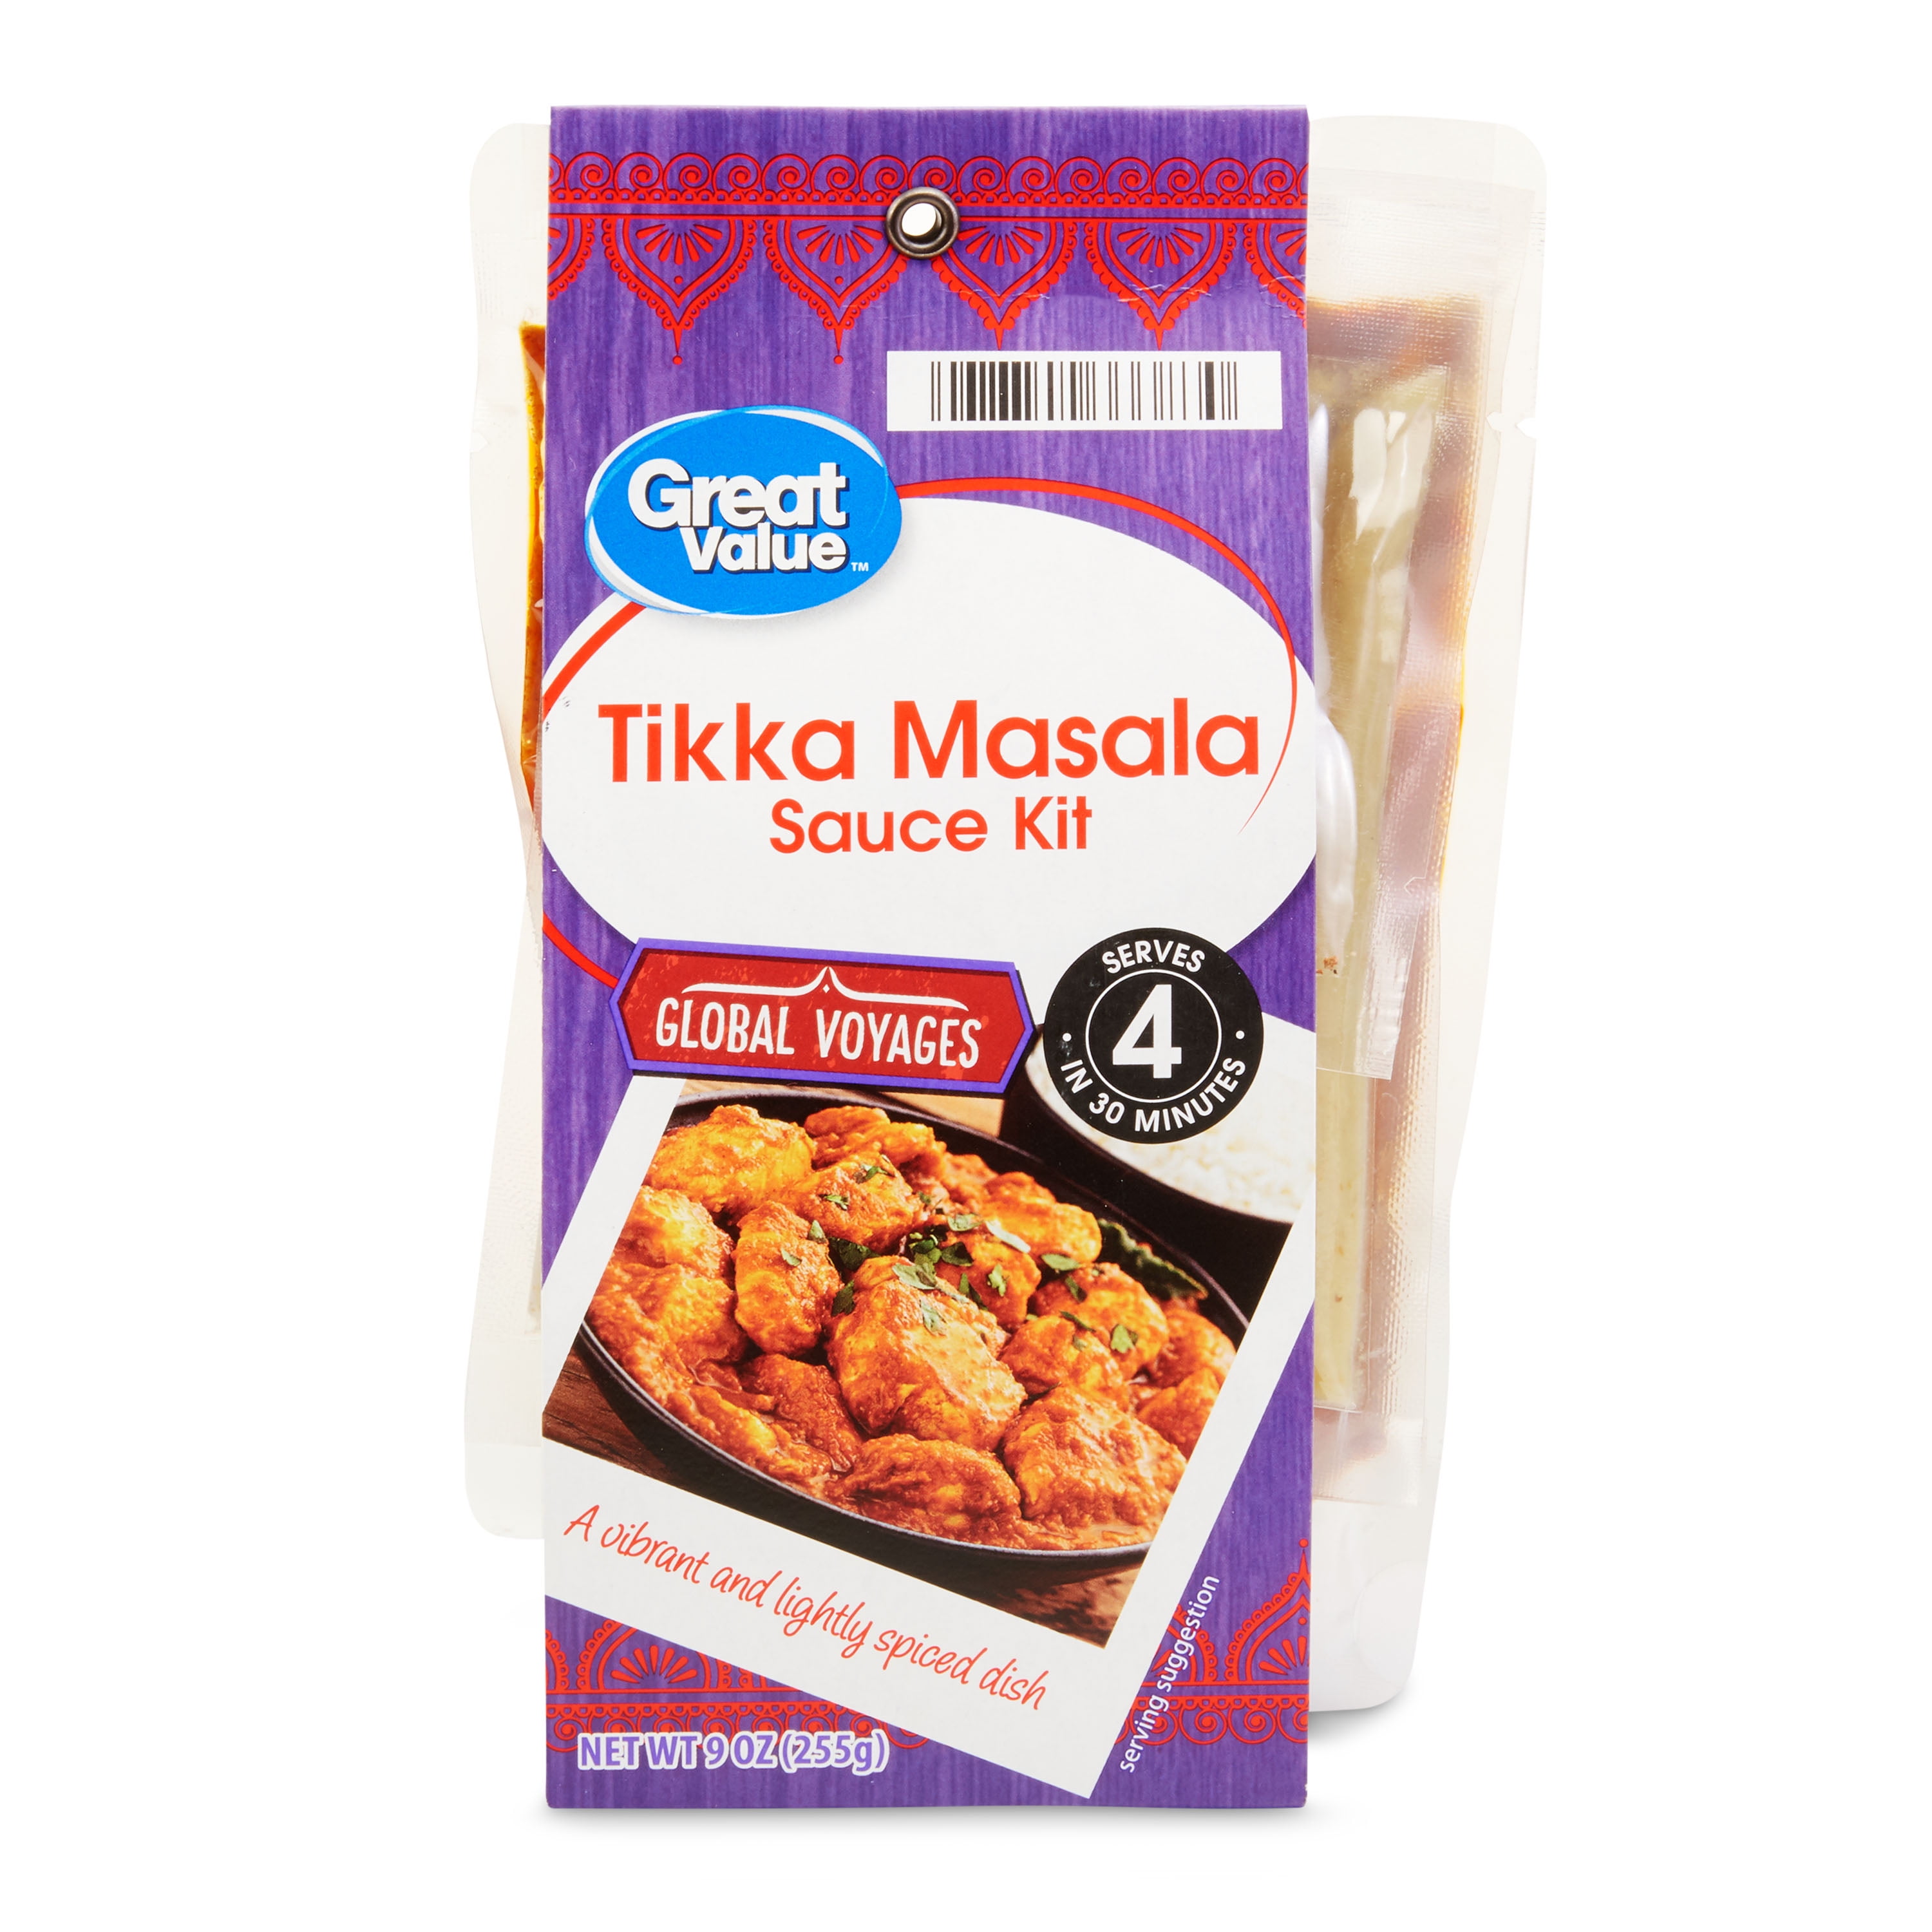 Great Value Tikka Masala Sauce Kit, 9 oz